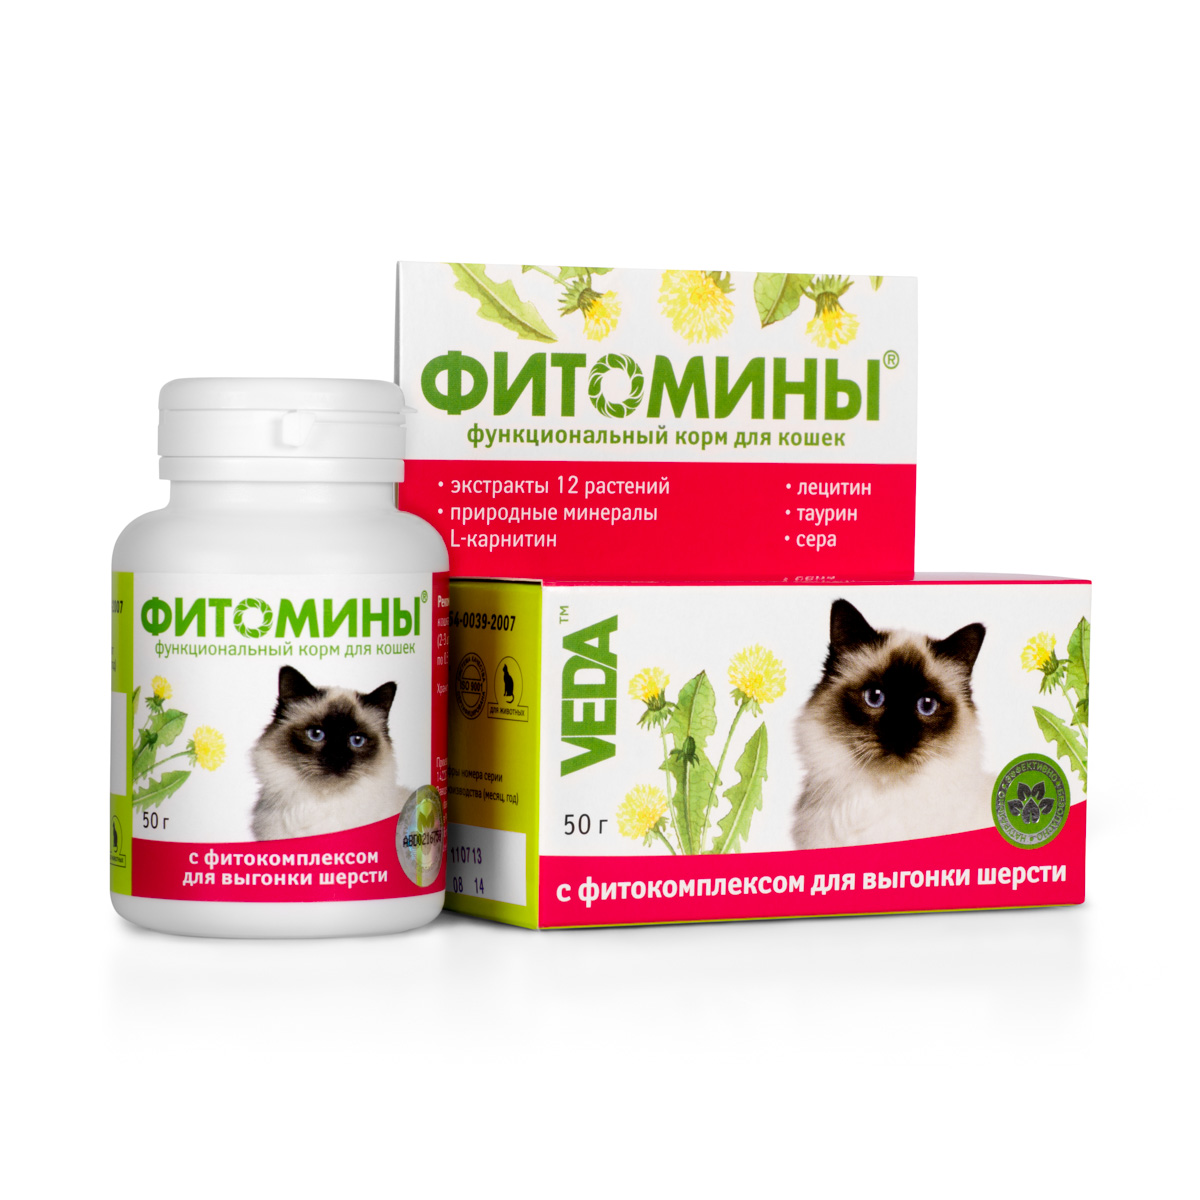 Фитомины функциональный корм для кошек с фитокомплексом для выгонки шерсти, 50 г